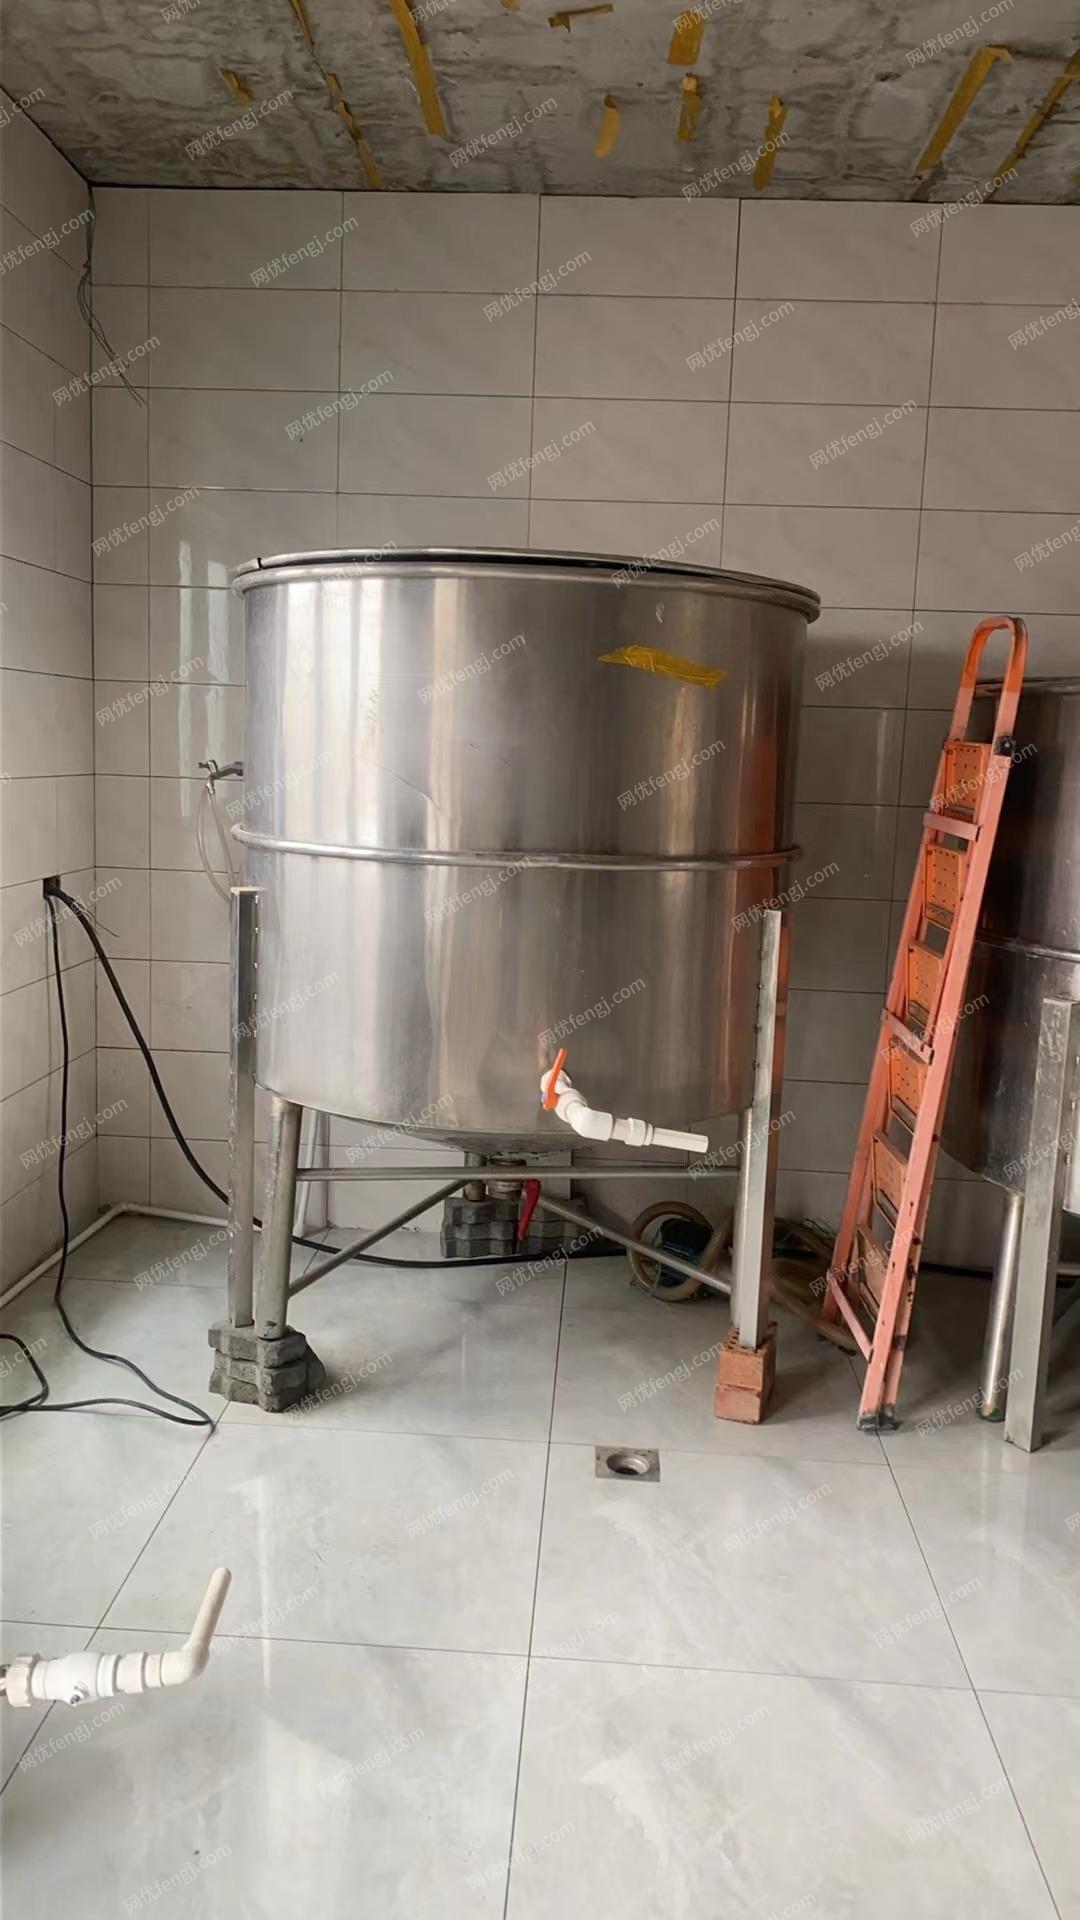 饮料加工厂处理1吨搅拌机,2吨冷热缸,700公斤不锈钢罐5-6个,有图片